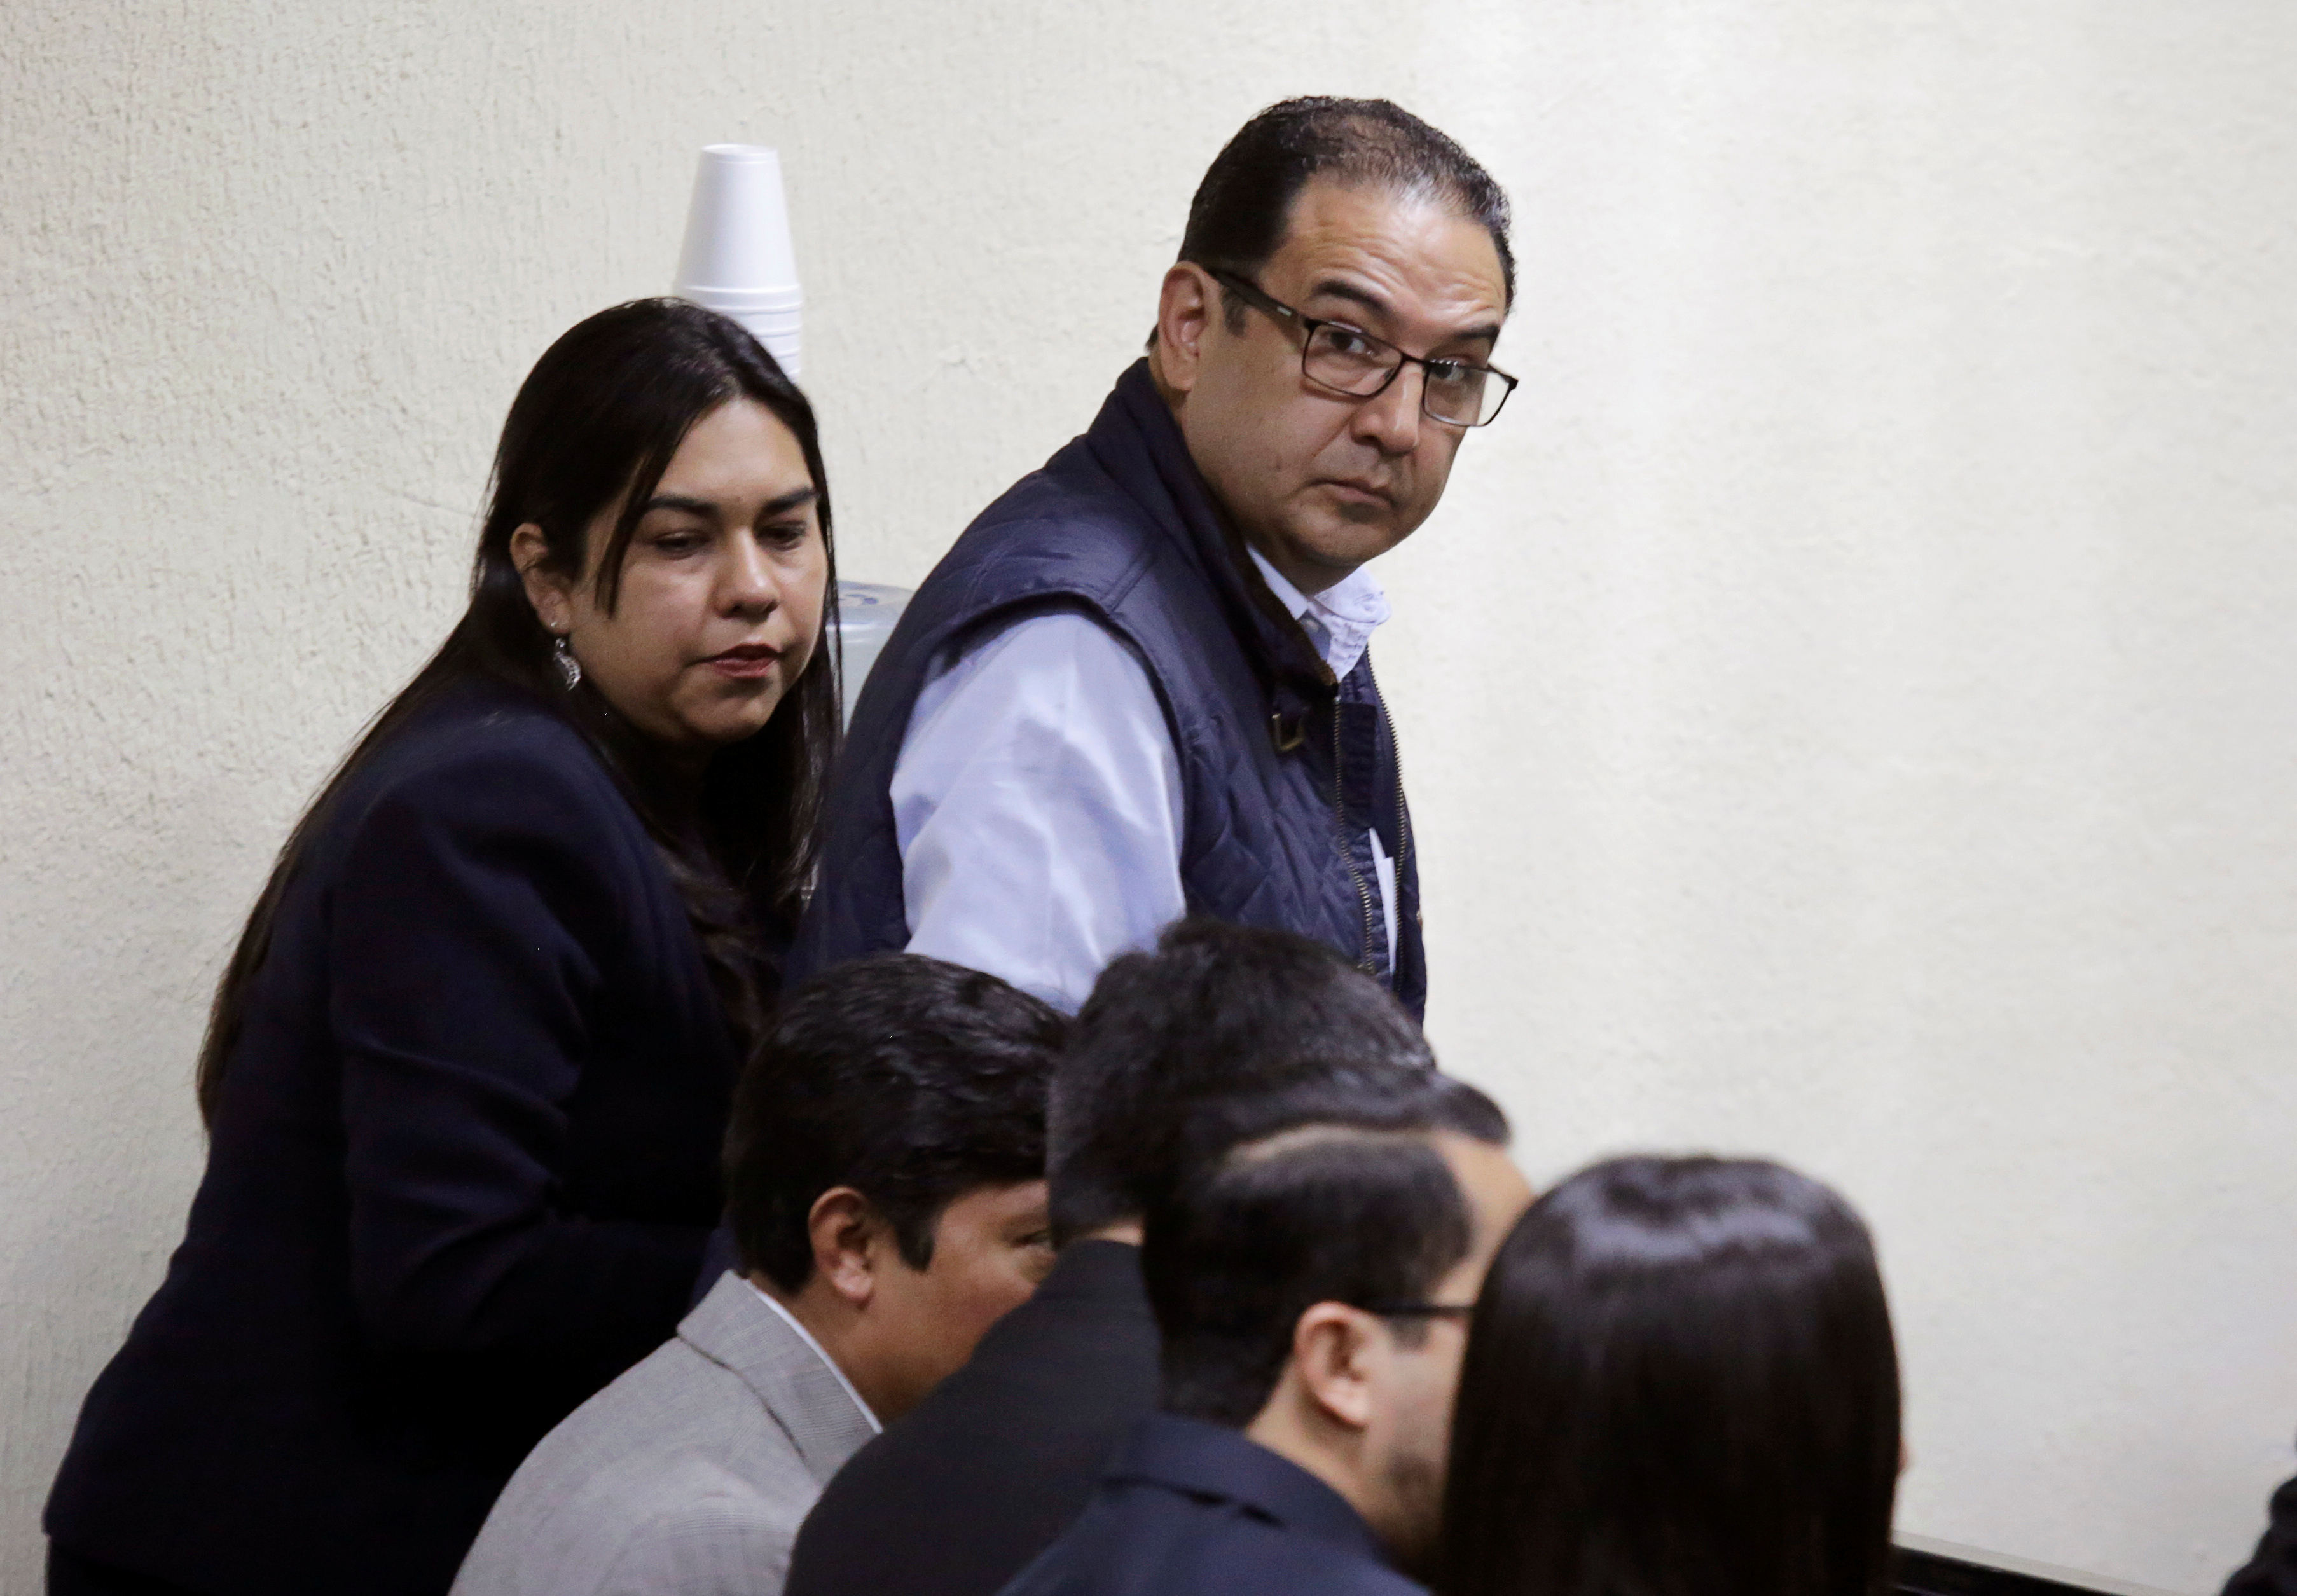 Hijo y hermano del presidente de Guatemala quedan absueltos en caso de corrupción